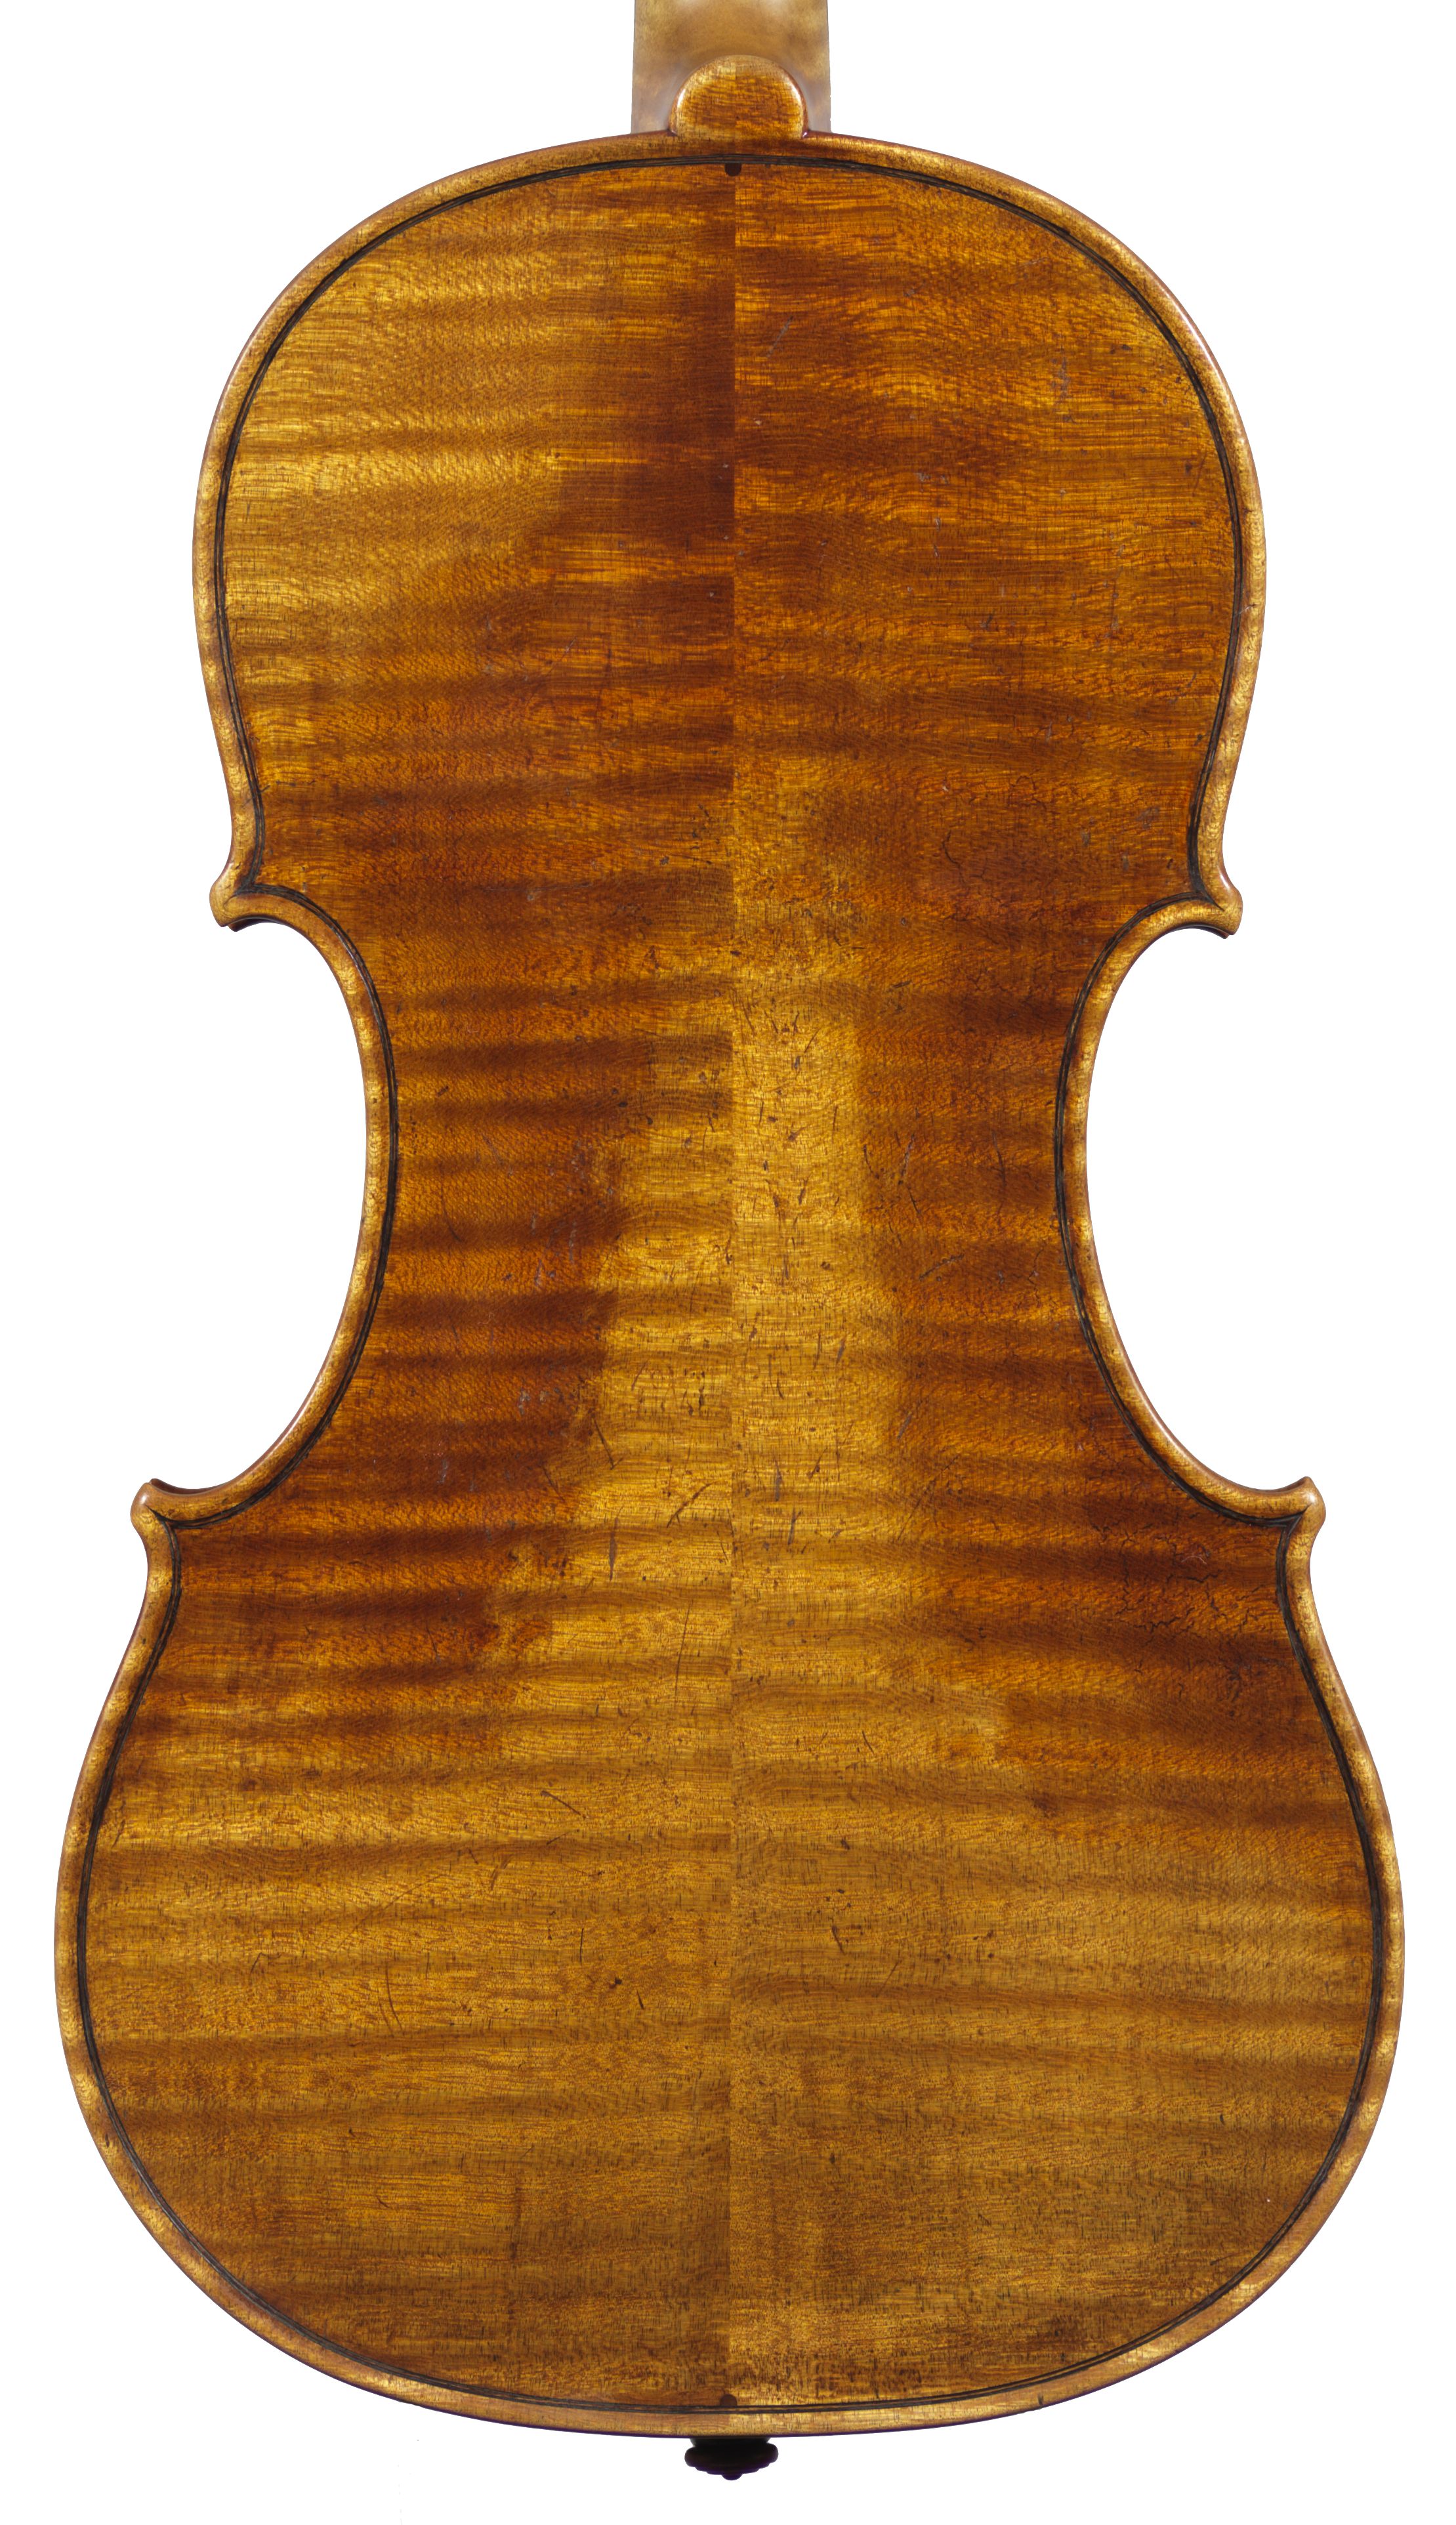 Paul Crowley DG violin back 2014.jpg